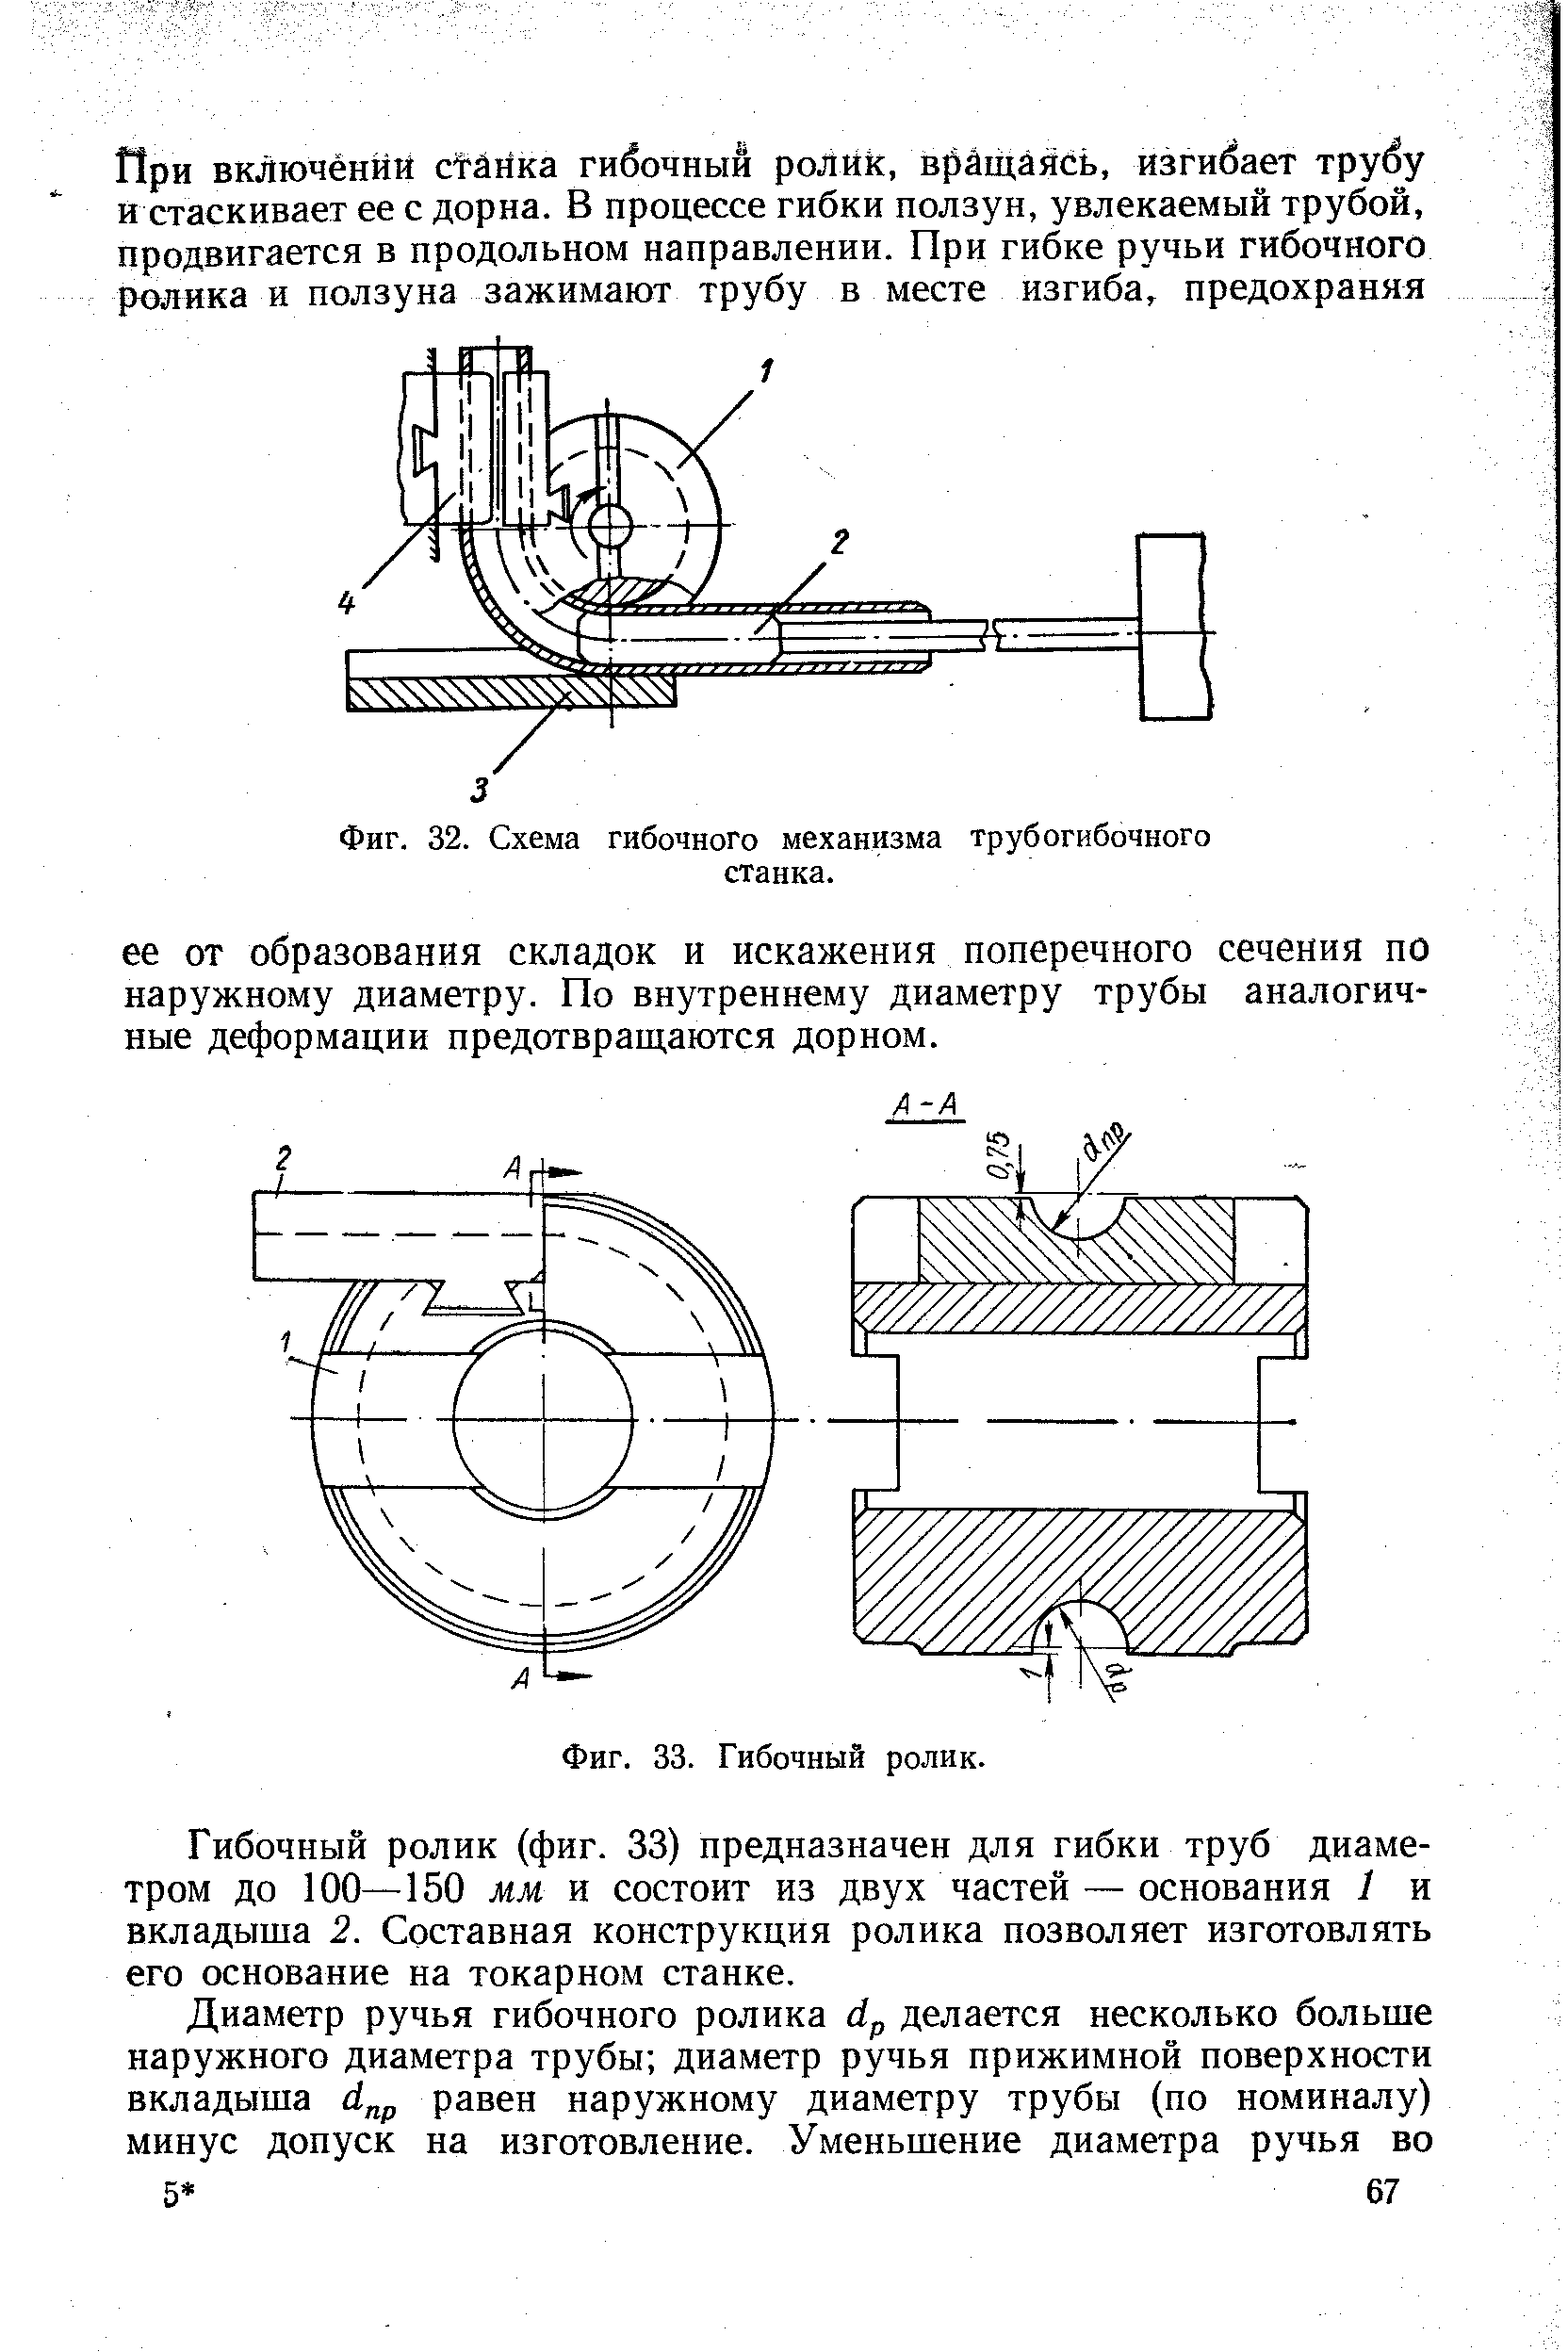 Фиг. 32. Схема гибочного механизма трубогибочного станка.
